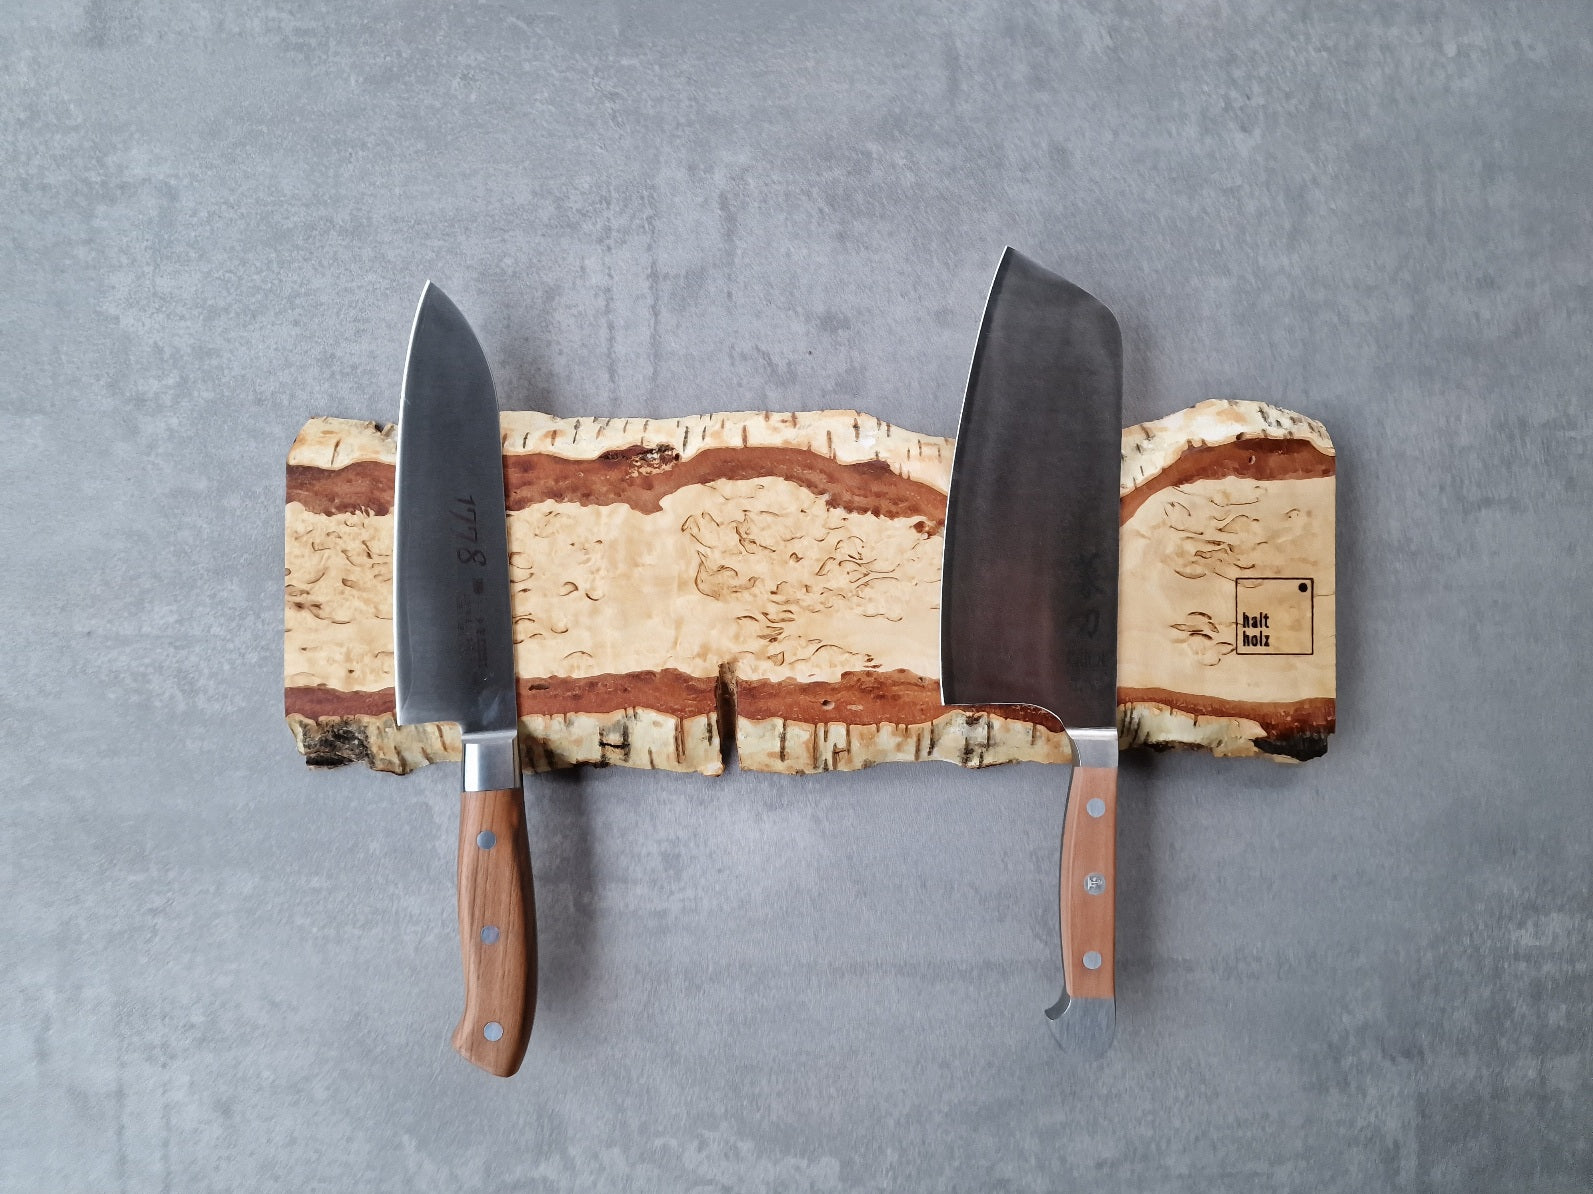 Maser Birke Edelholz Messerleiste für 6 Messer an einer Betonwand. Dekoriert mit einem Kochmesser von Dick und Güde.